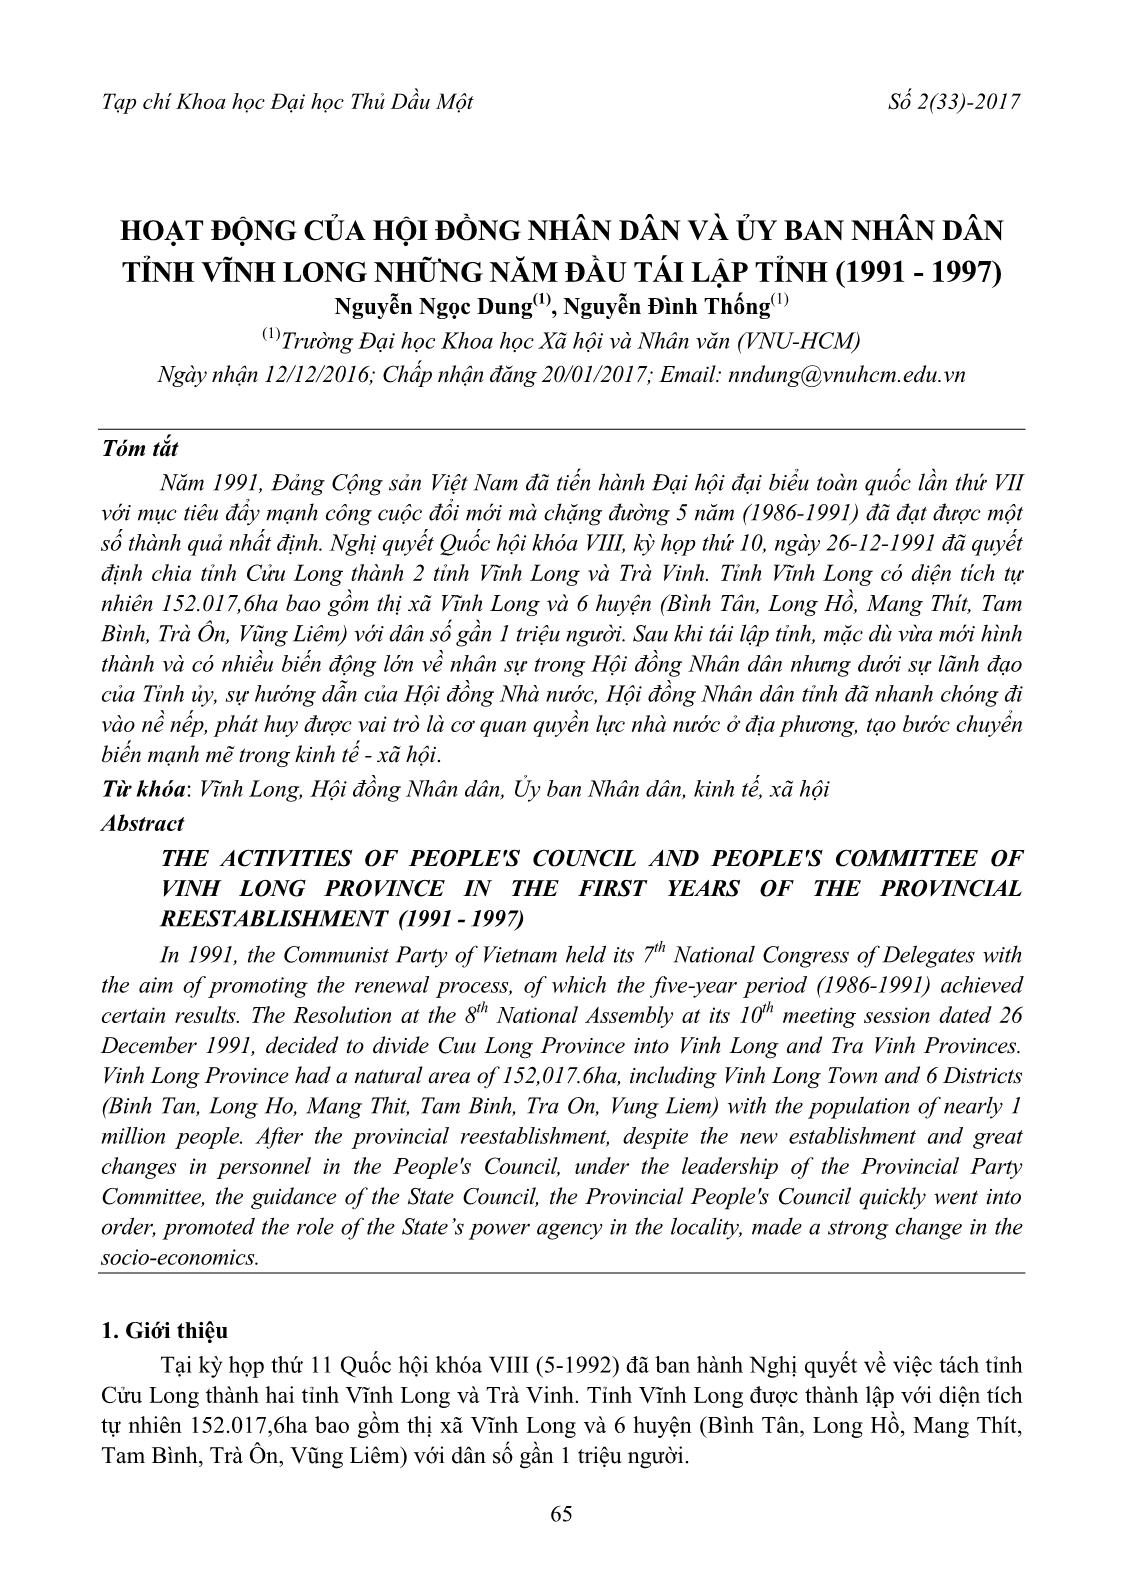 Hoạt động của hội đồng nhân dân và ủy ban nhân dân tỉnh Vĩnh Long những năm đầu tái lập tỉnh (1991 - 1997) trang 1